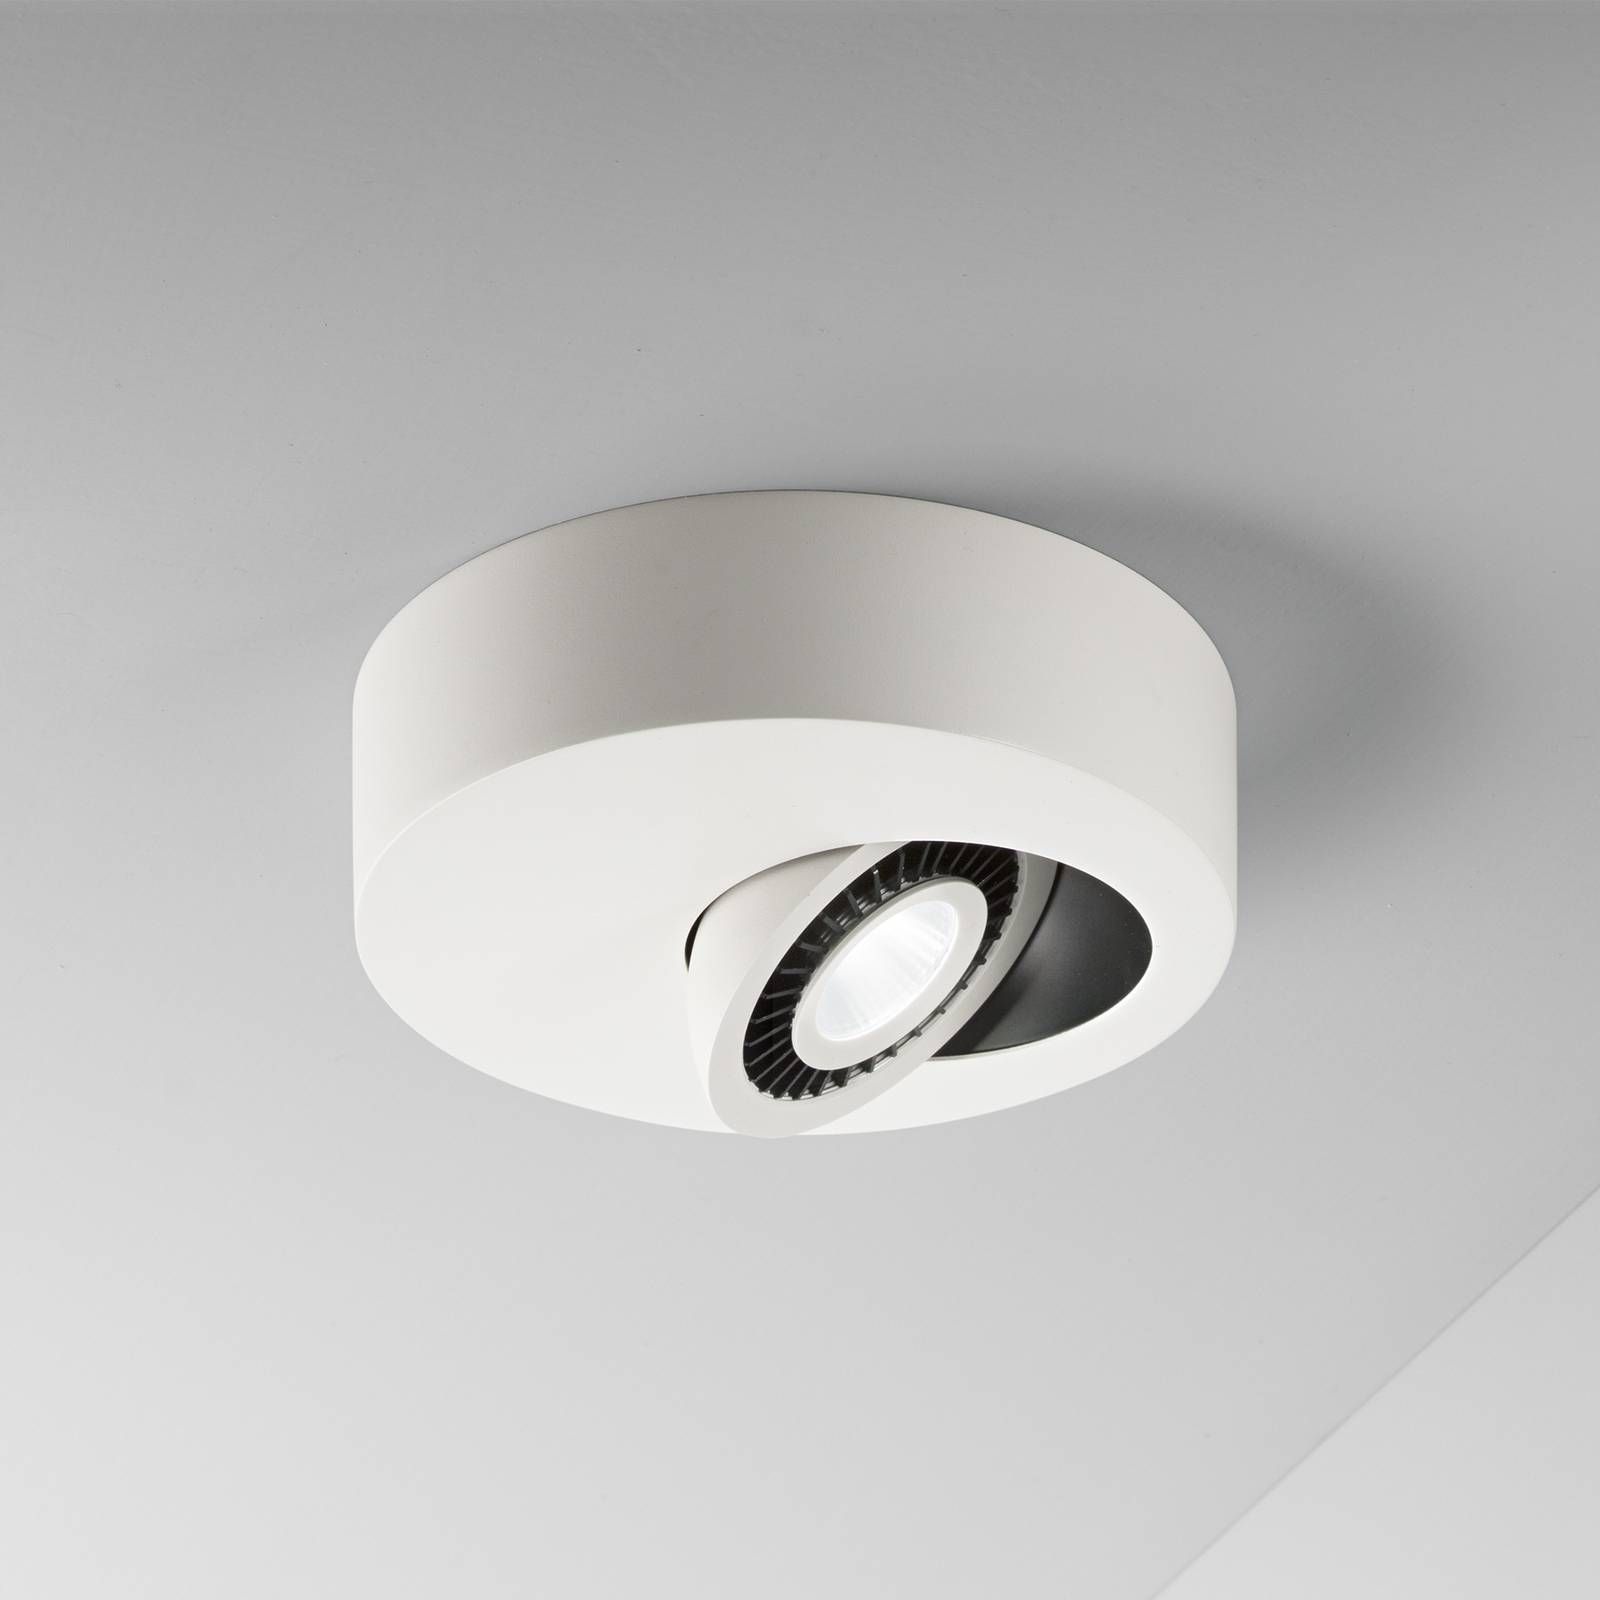 Egger Licht Geo stropné LED svetlo s svetlom, biela, Chodba, hliník, 5W, K: 4cm